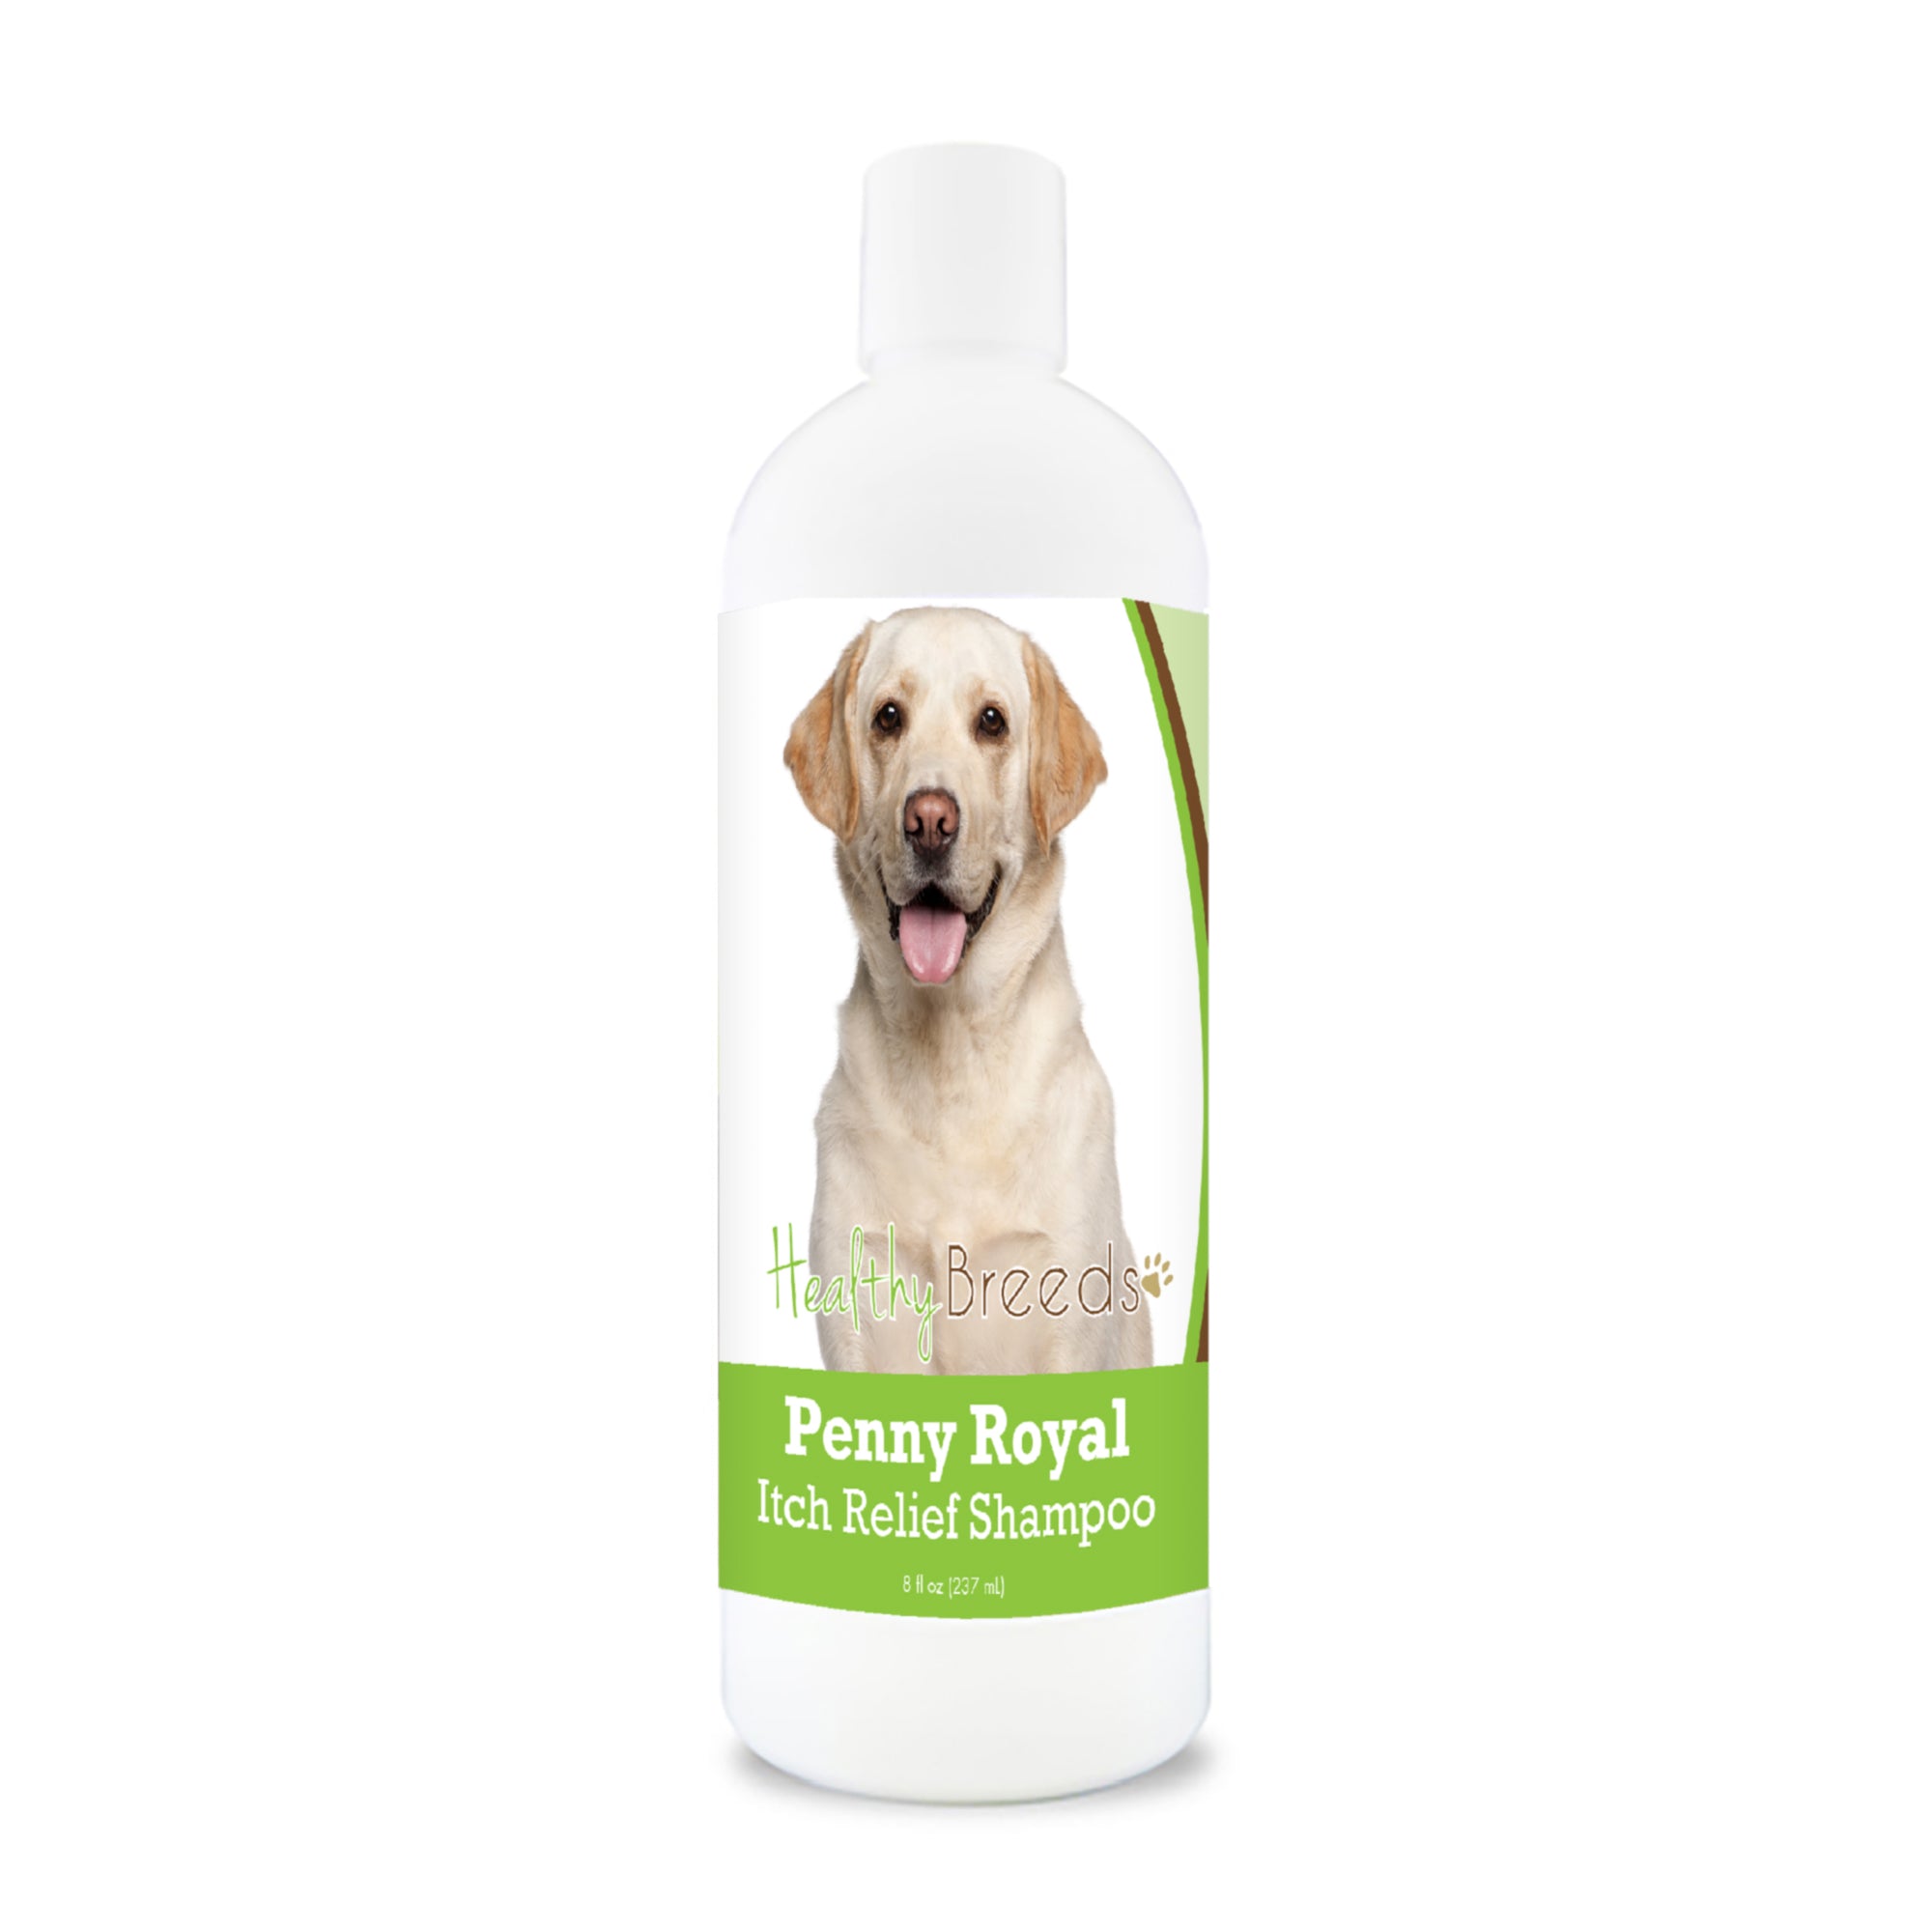 Labrador Retriever Penny Royal Itch Relief Shampoo 8 oz